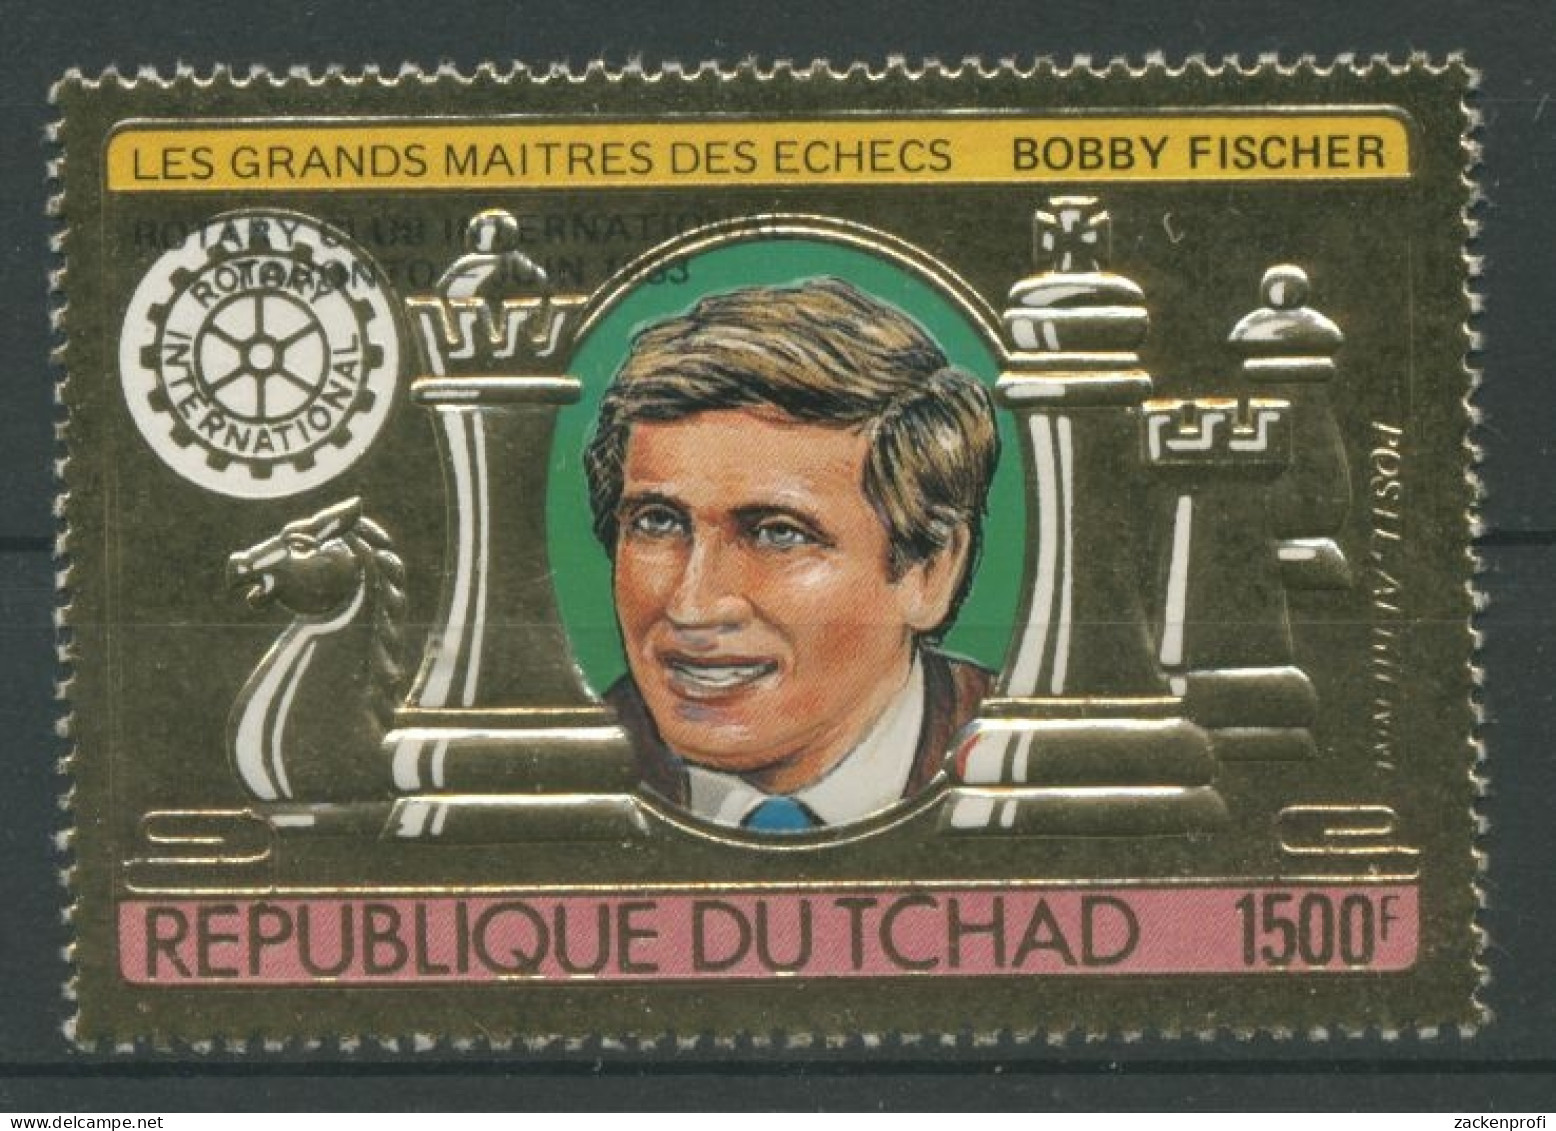 Tschad 1982 Schachgroßmeister Bobby Fischer 951 A Postfrisch - Tchad (1960-...)